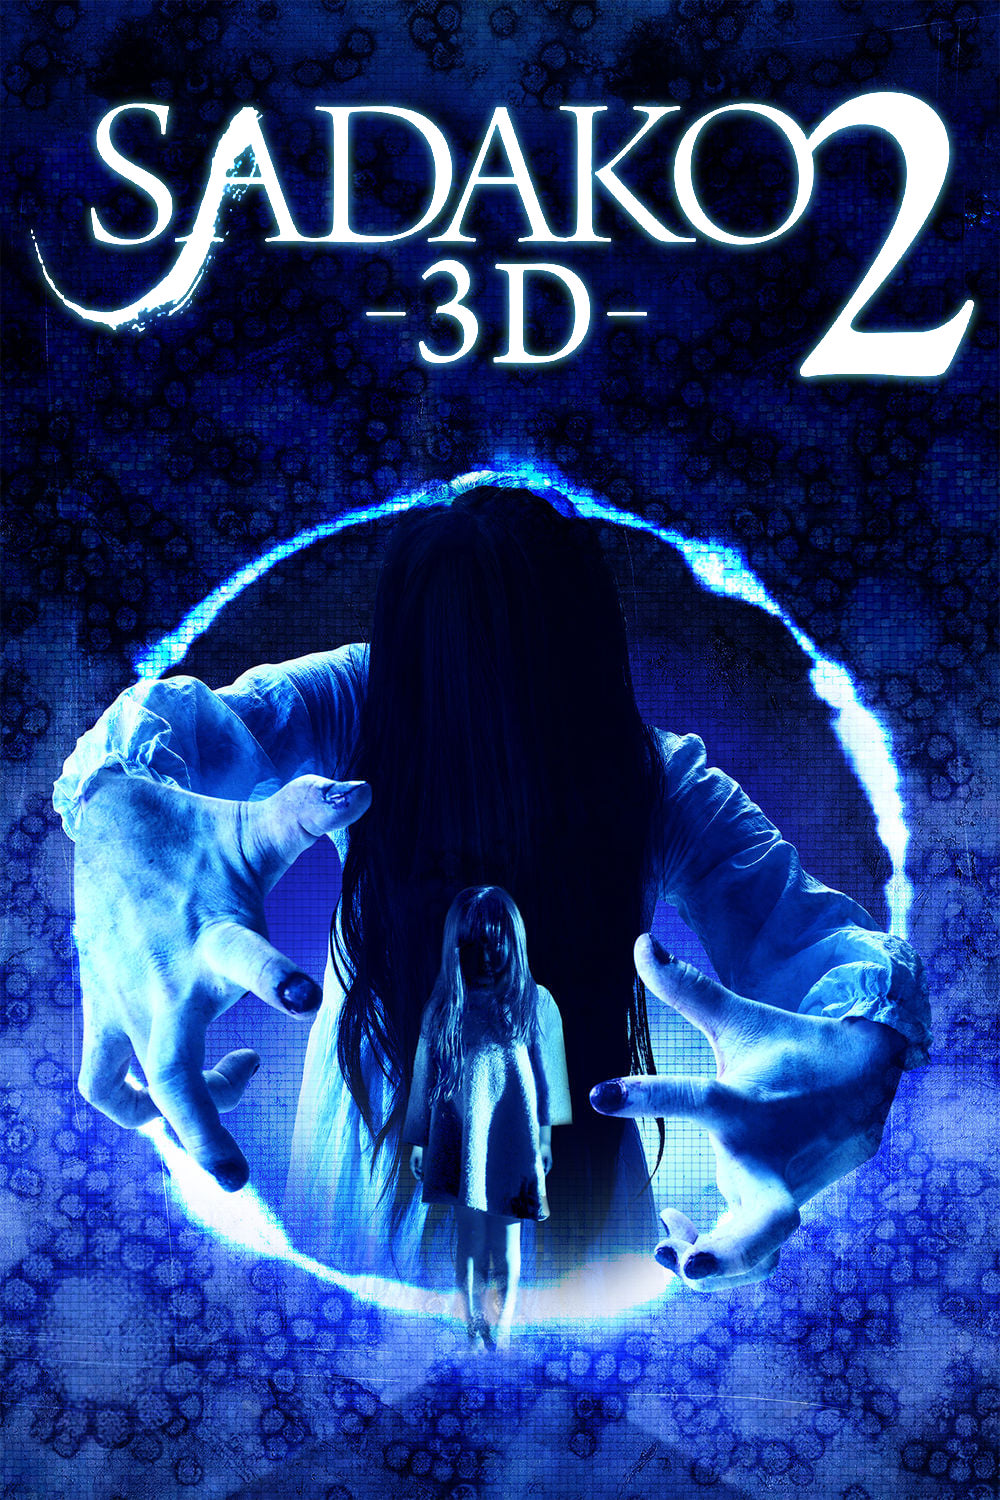 Sadako 3D 2 [Sub-ITA] (2013)